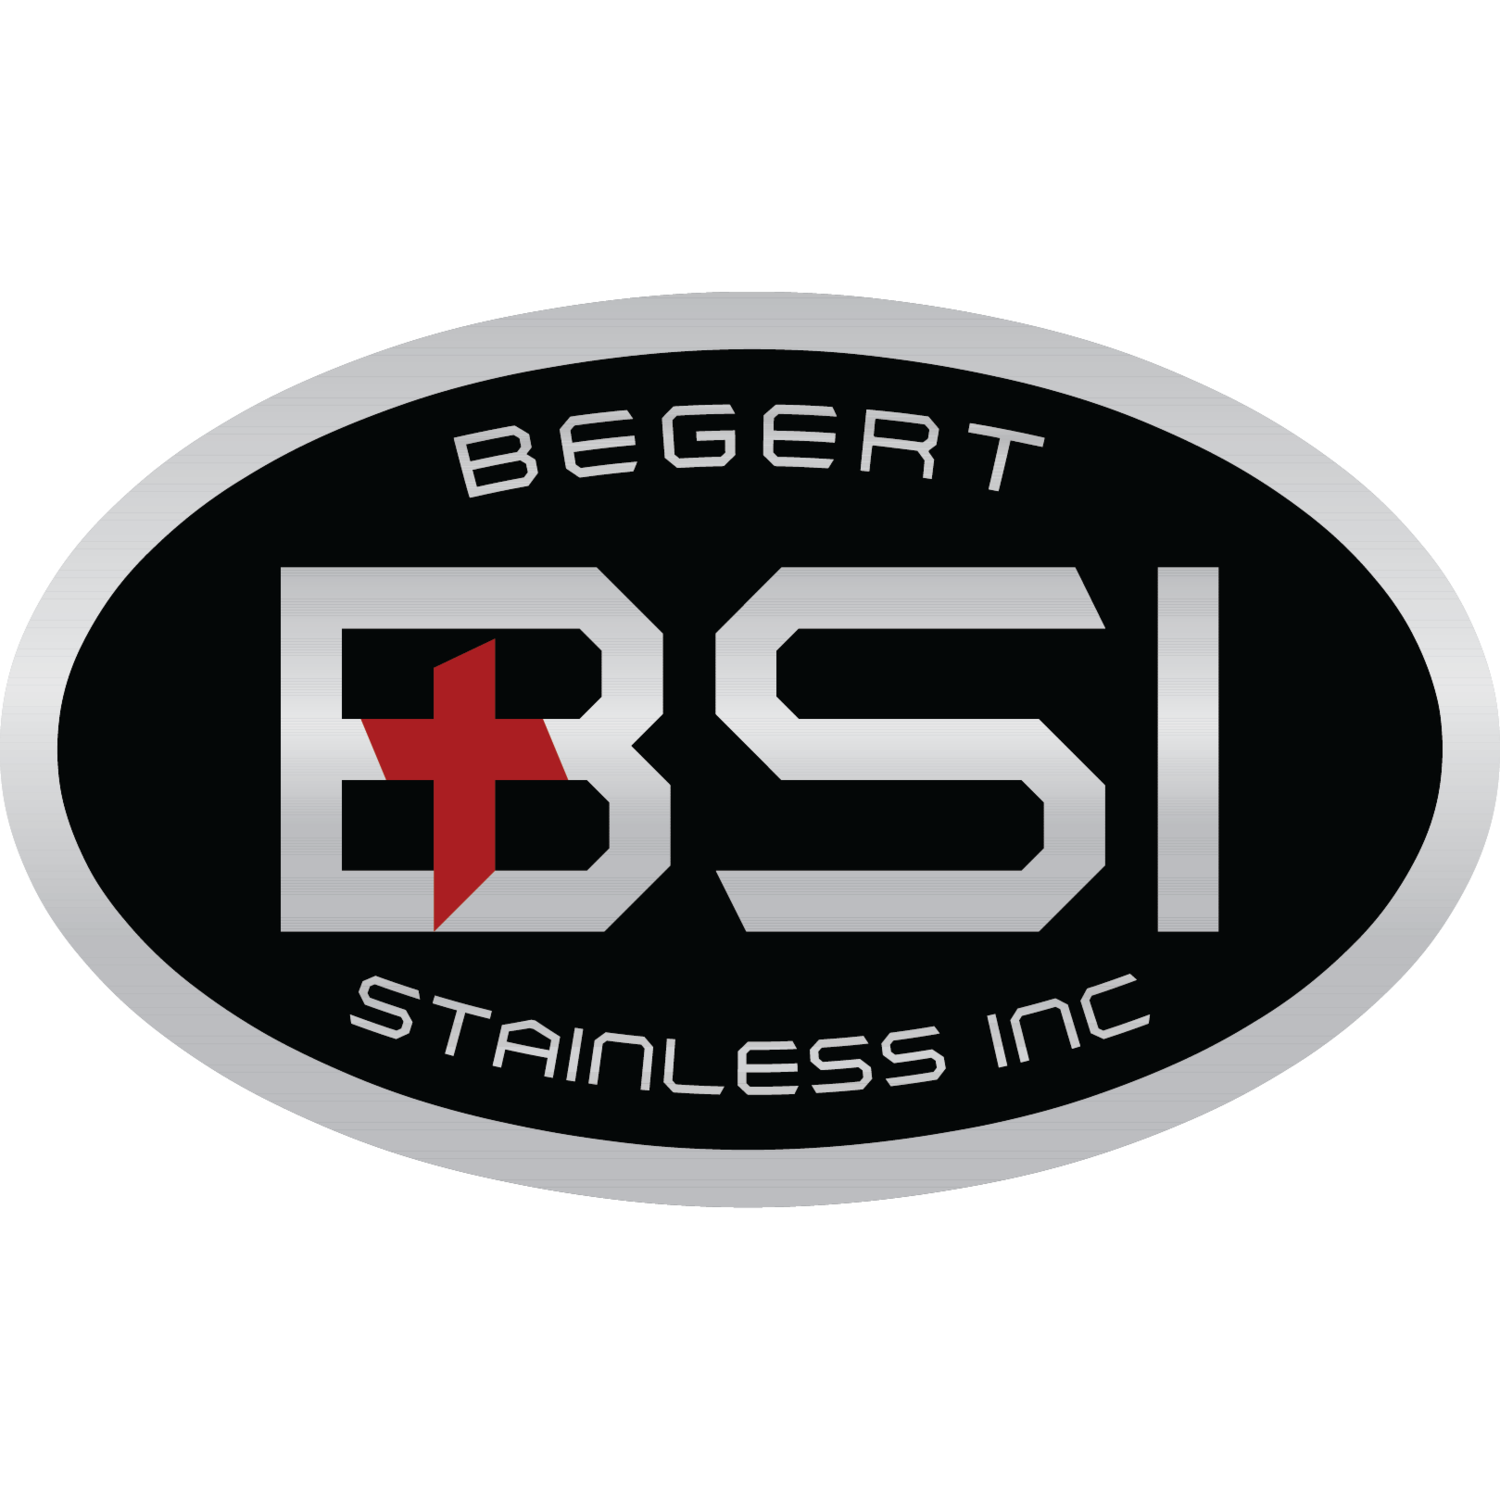 Begert Stainless